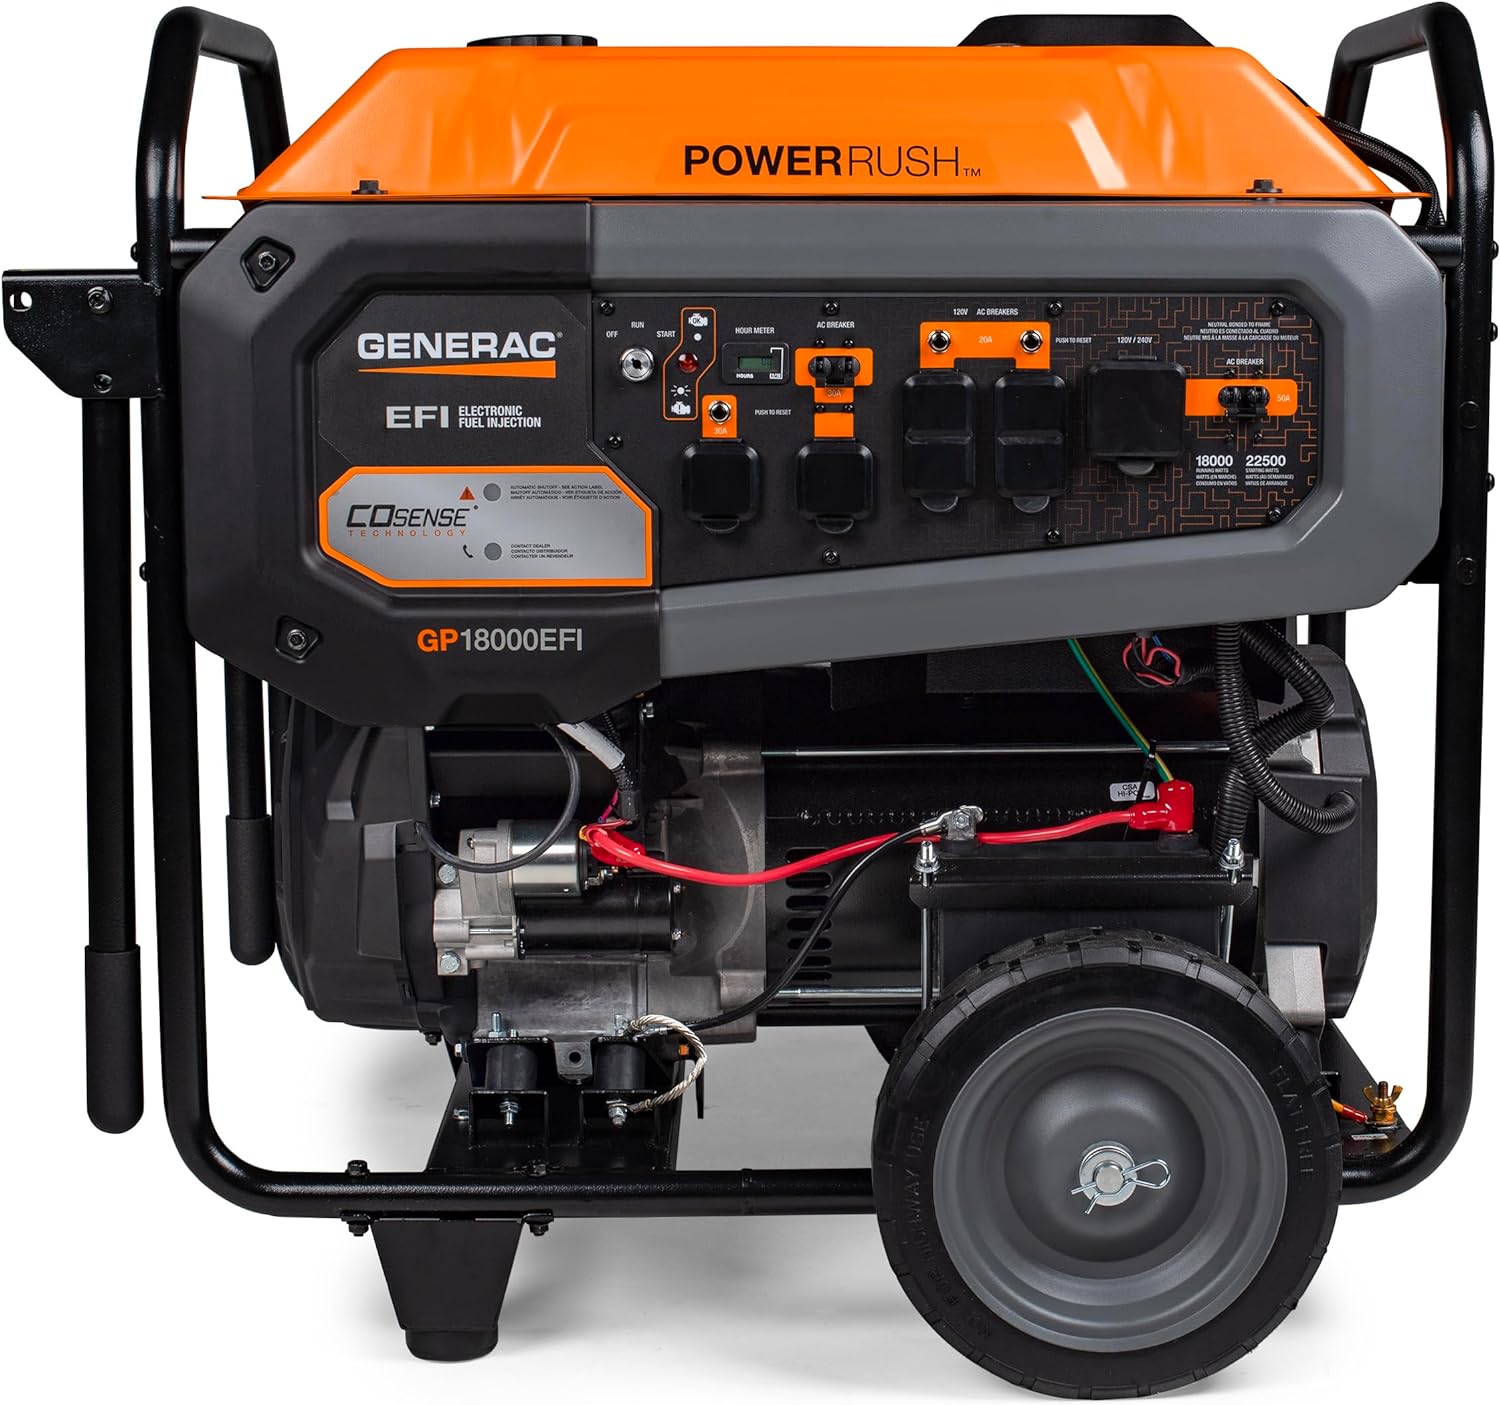 Generac 8917 GP18000EFI 816cc EFI 18,000 Watt Gas Powered Portable Generator